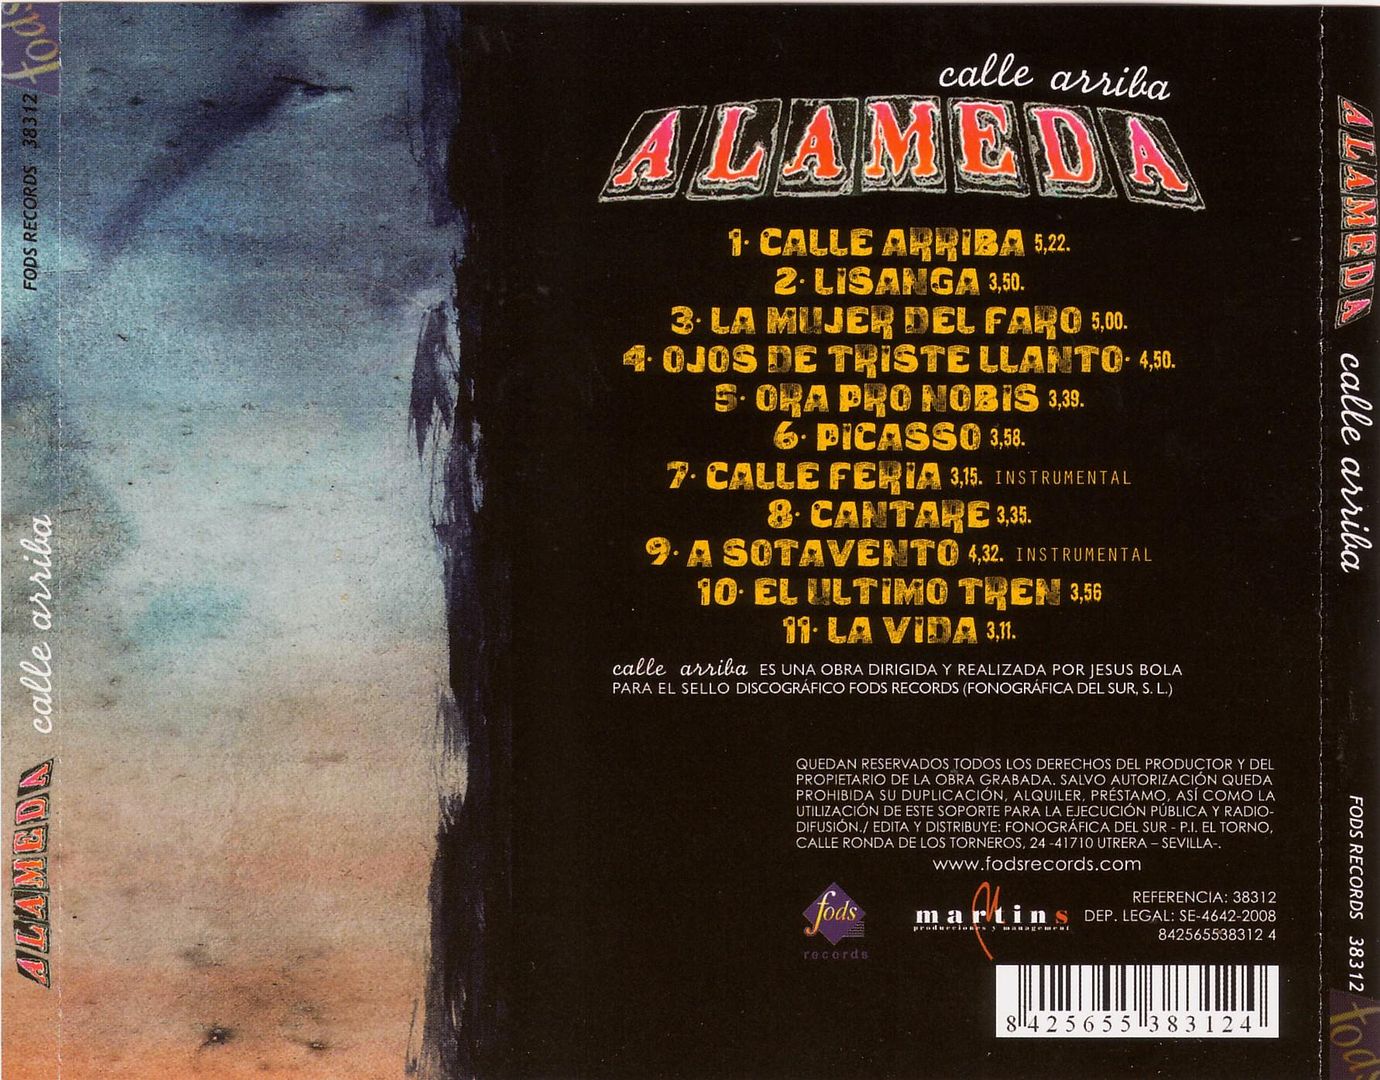 B Contraportada - Alameda - Calle Arriba MP3